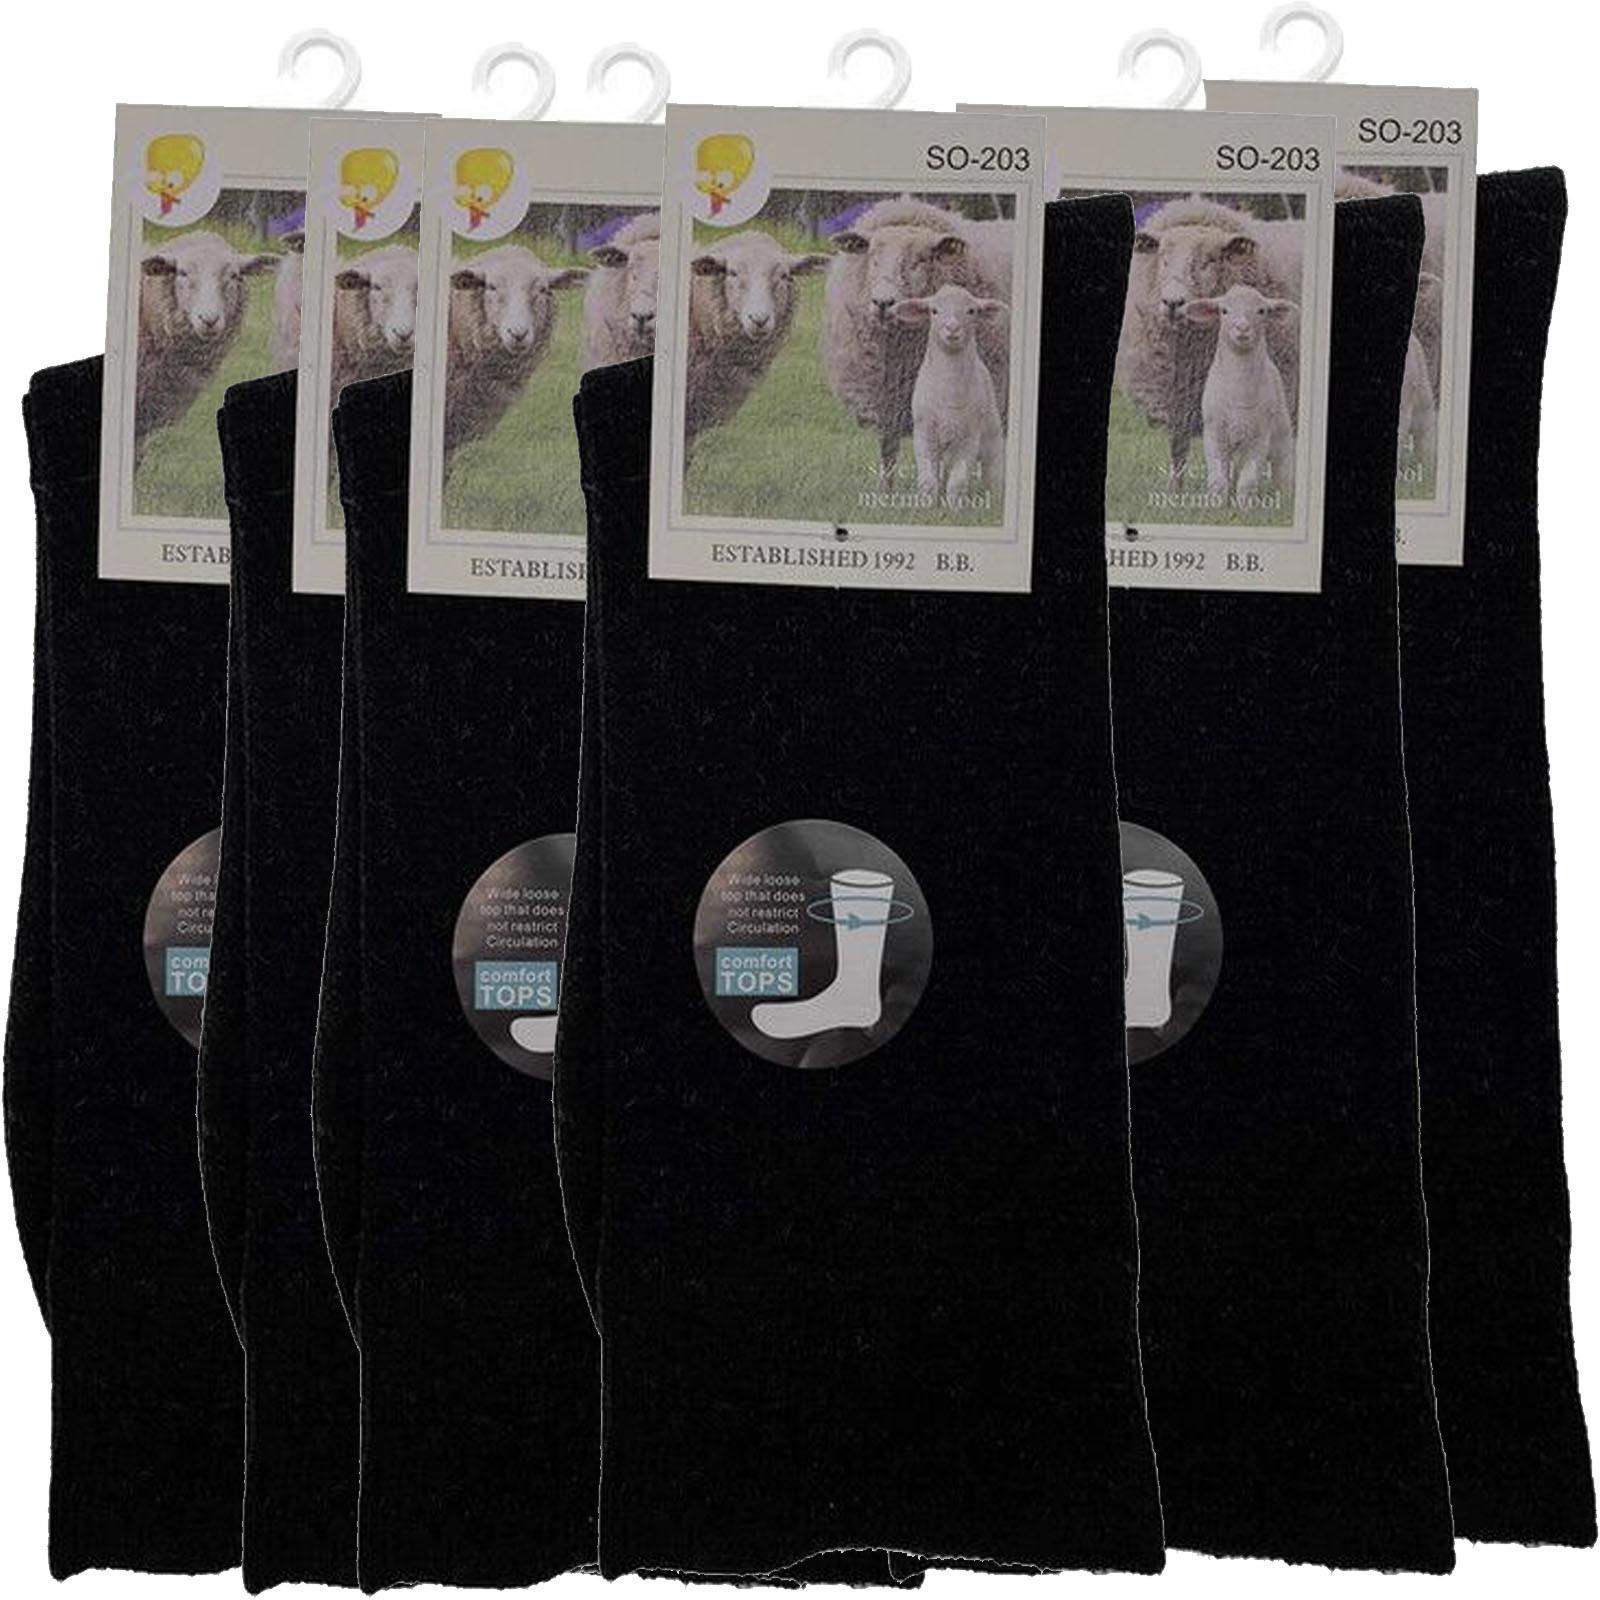 Merino Wool Mens Loose Top Thermal Socks Diabetic Comfort Circulation - 6 Pairs - Black - 2-8